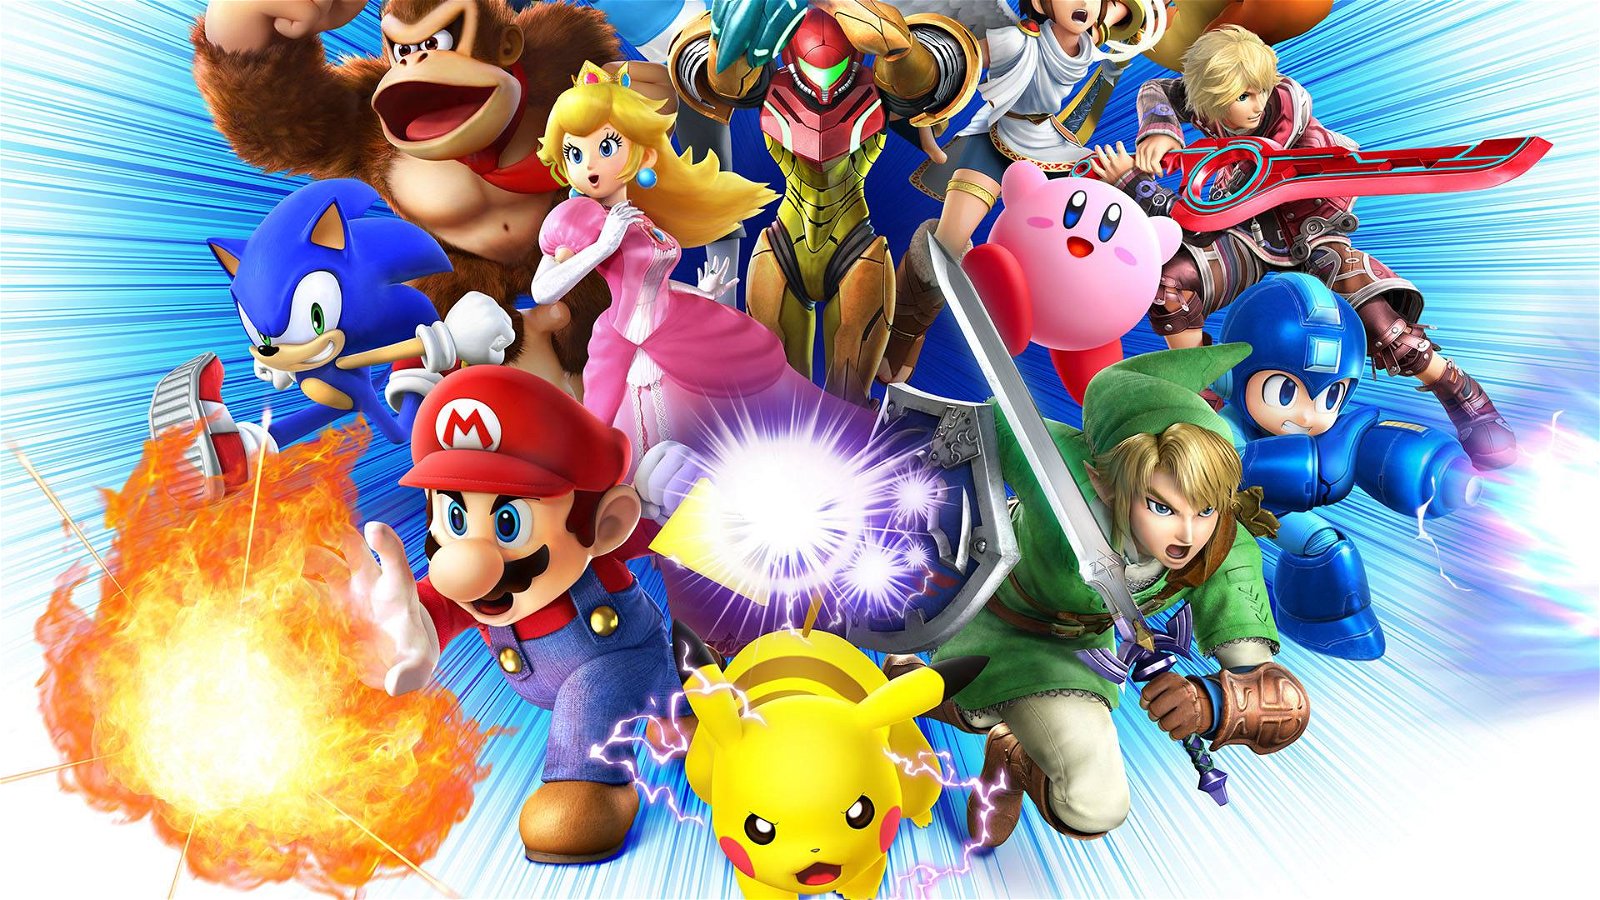 Super Smash Bros. for Nintendo 3DS e Wii U, gli amiibo, i DLC, e la prima versione per console portatile | Smash is here! #4